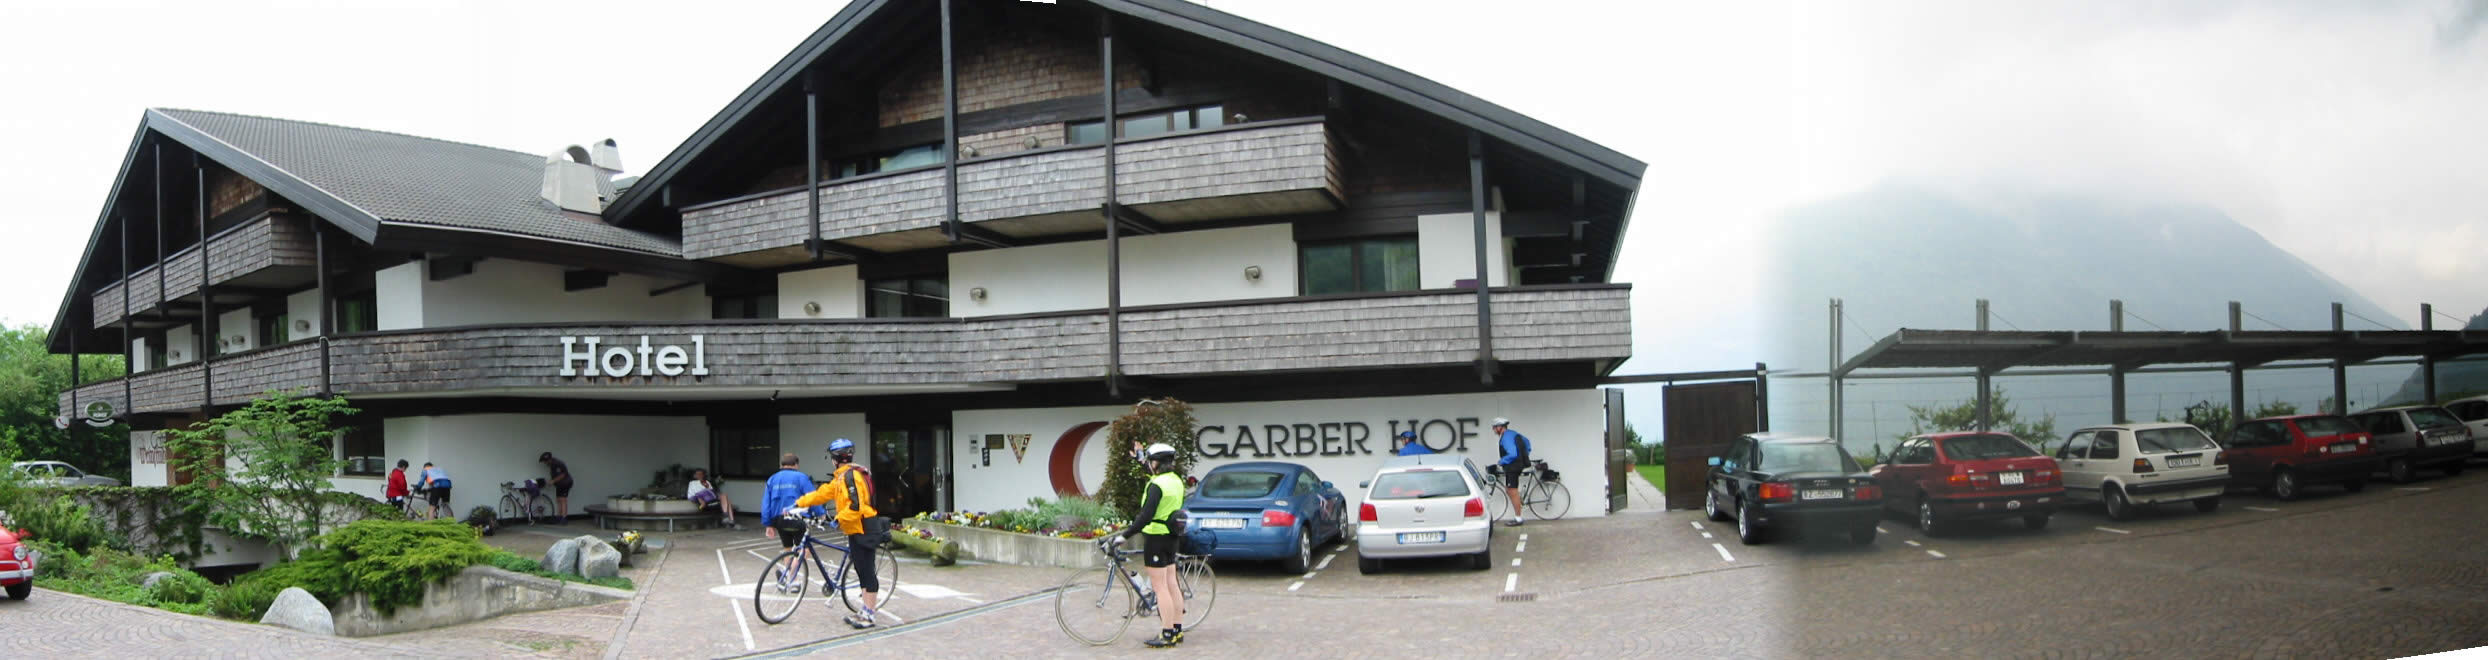 hotel garberhof